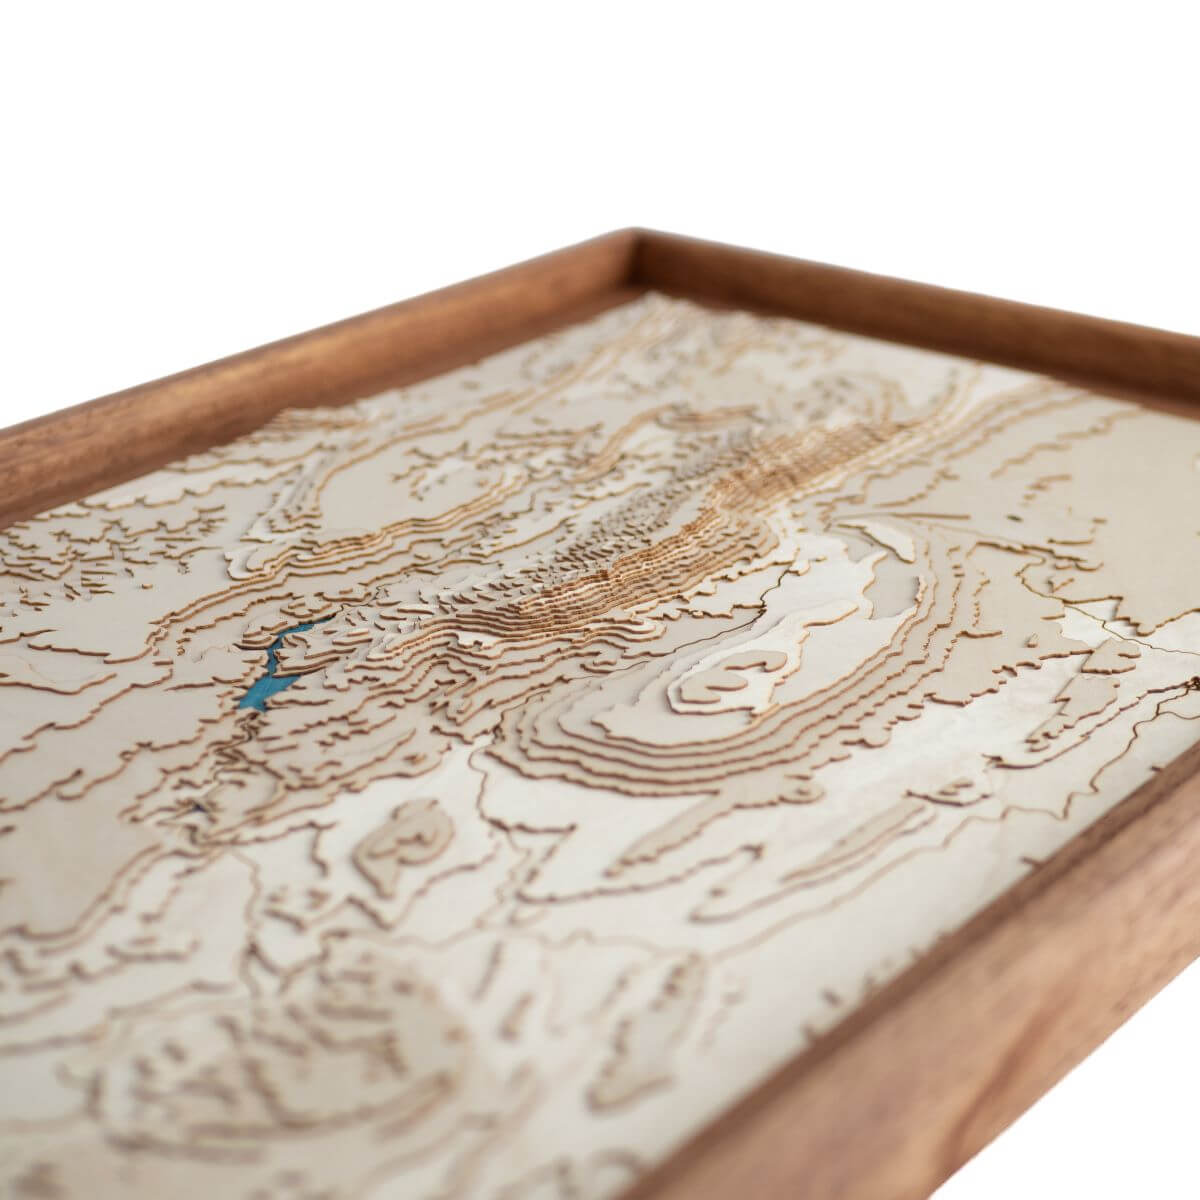 Détails du relief de la carte du massif de la Sainte-Victoire en bois